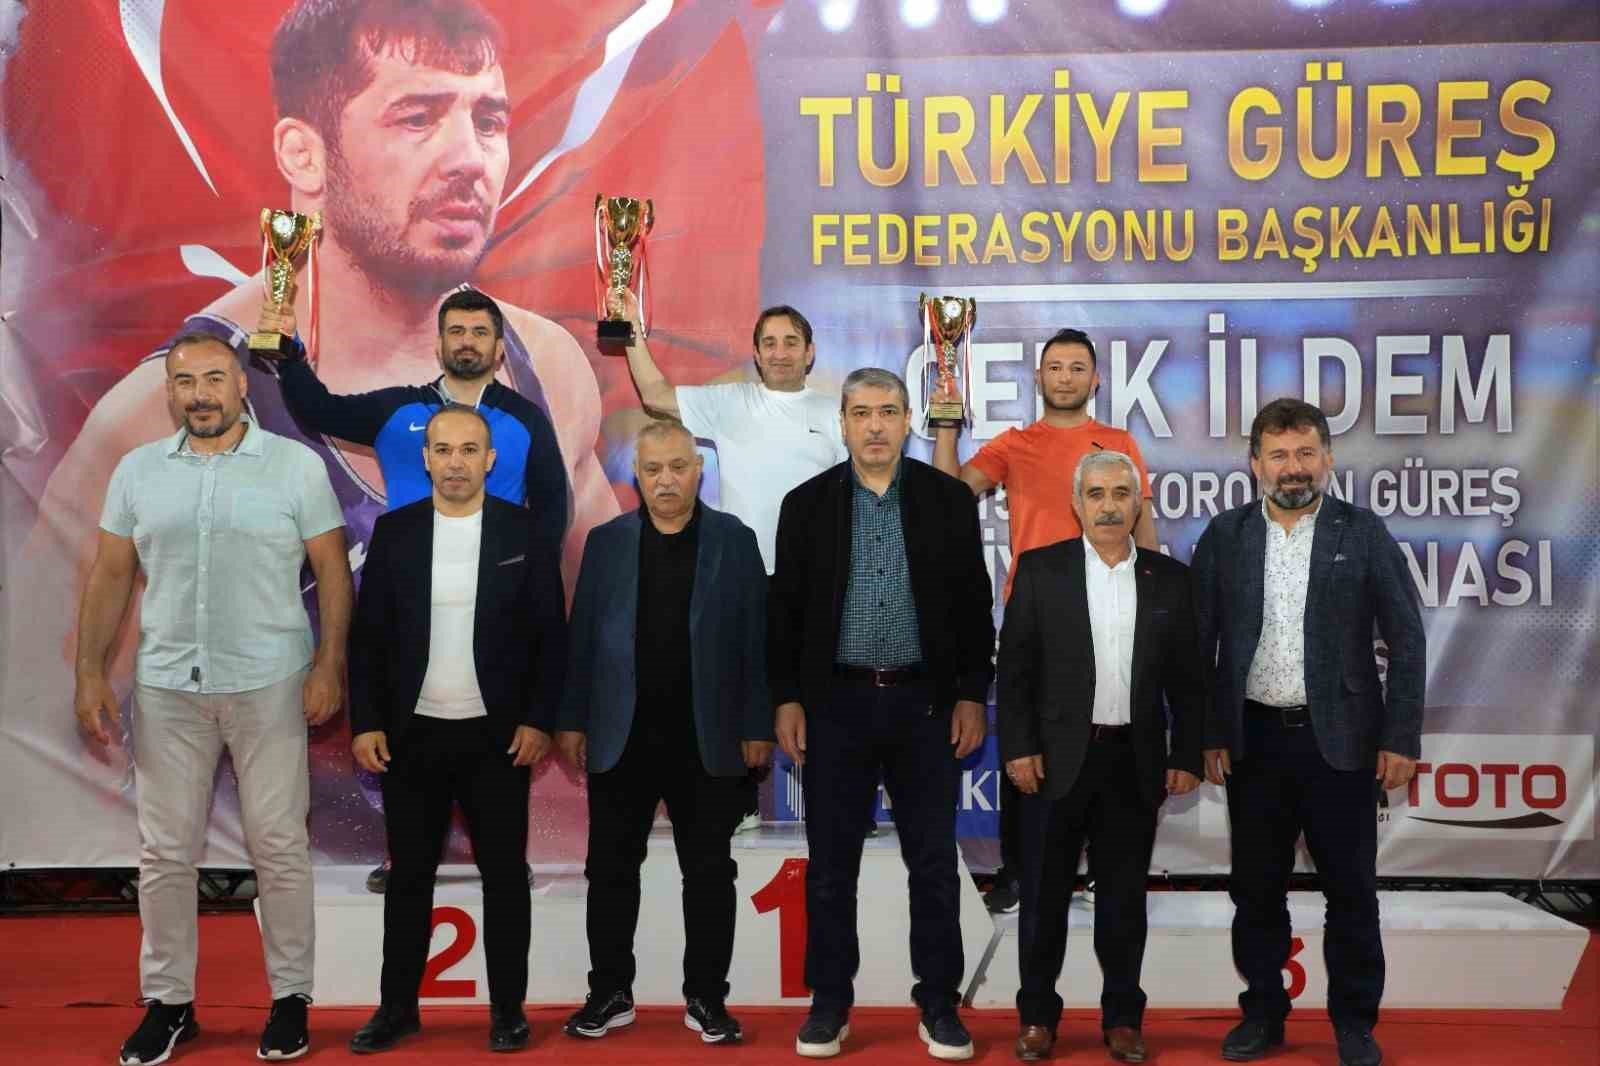 Cenk İldem U15 Erkekler Grekoromen Güreş Türkiye Şampiyonası sona erdi
